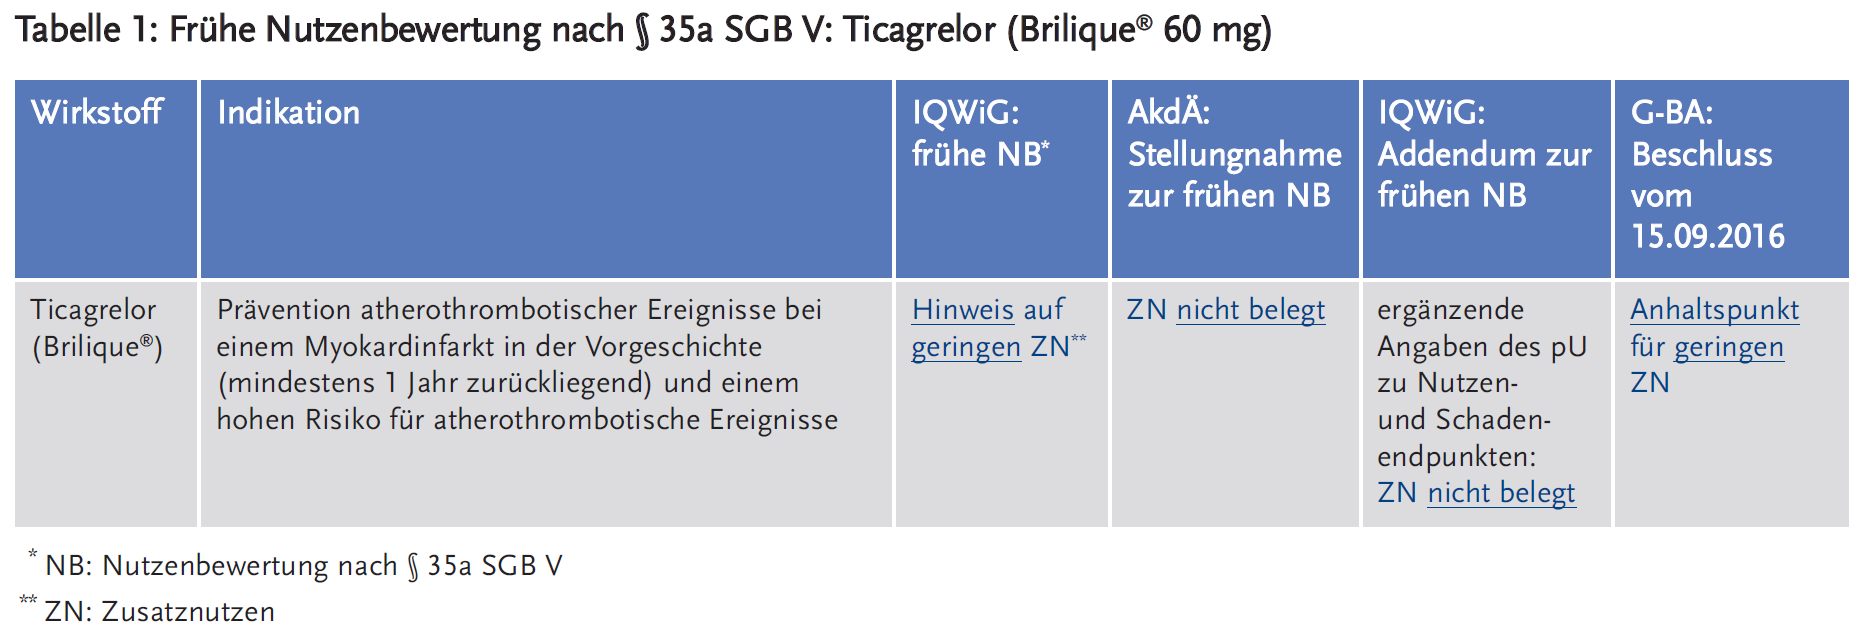 Tabelle 1: Frühe Nutzenbewertung nach § 35a SGB V: Ticagrelor (Brilique® 60 mg)